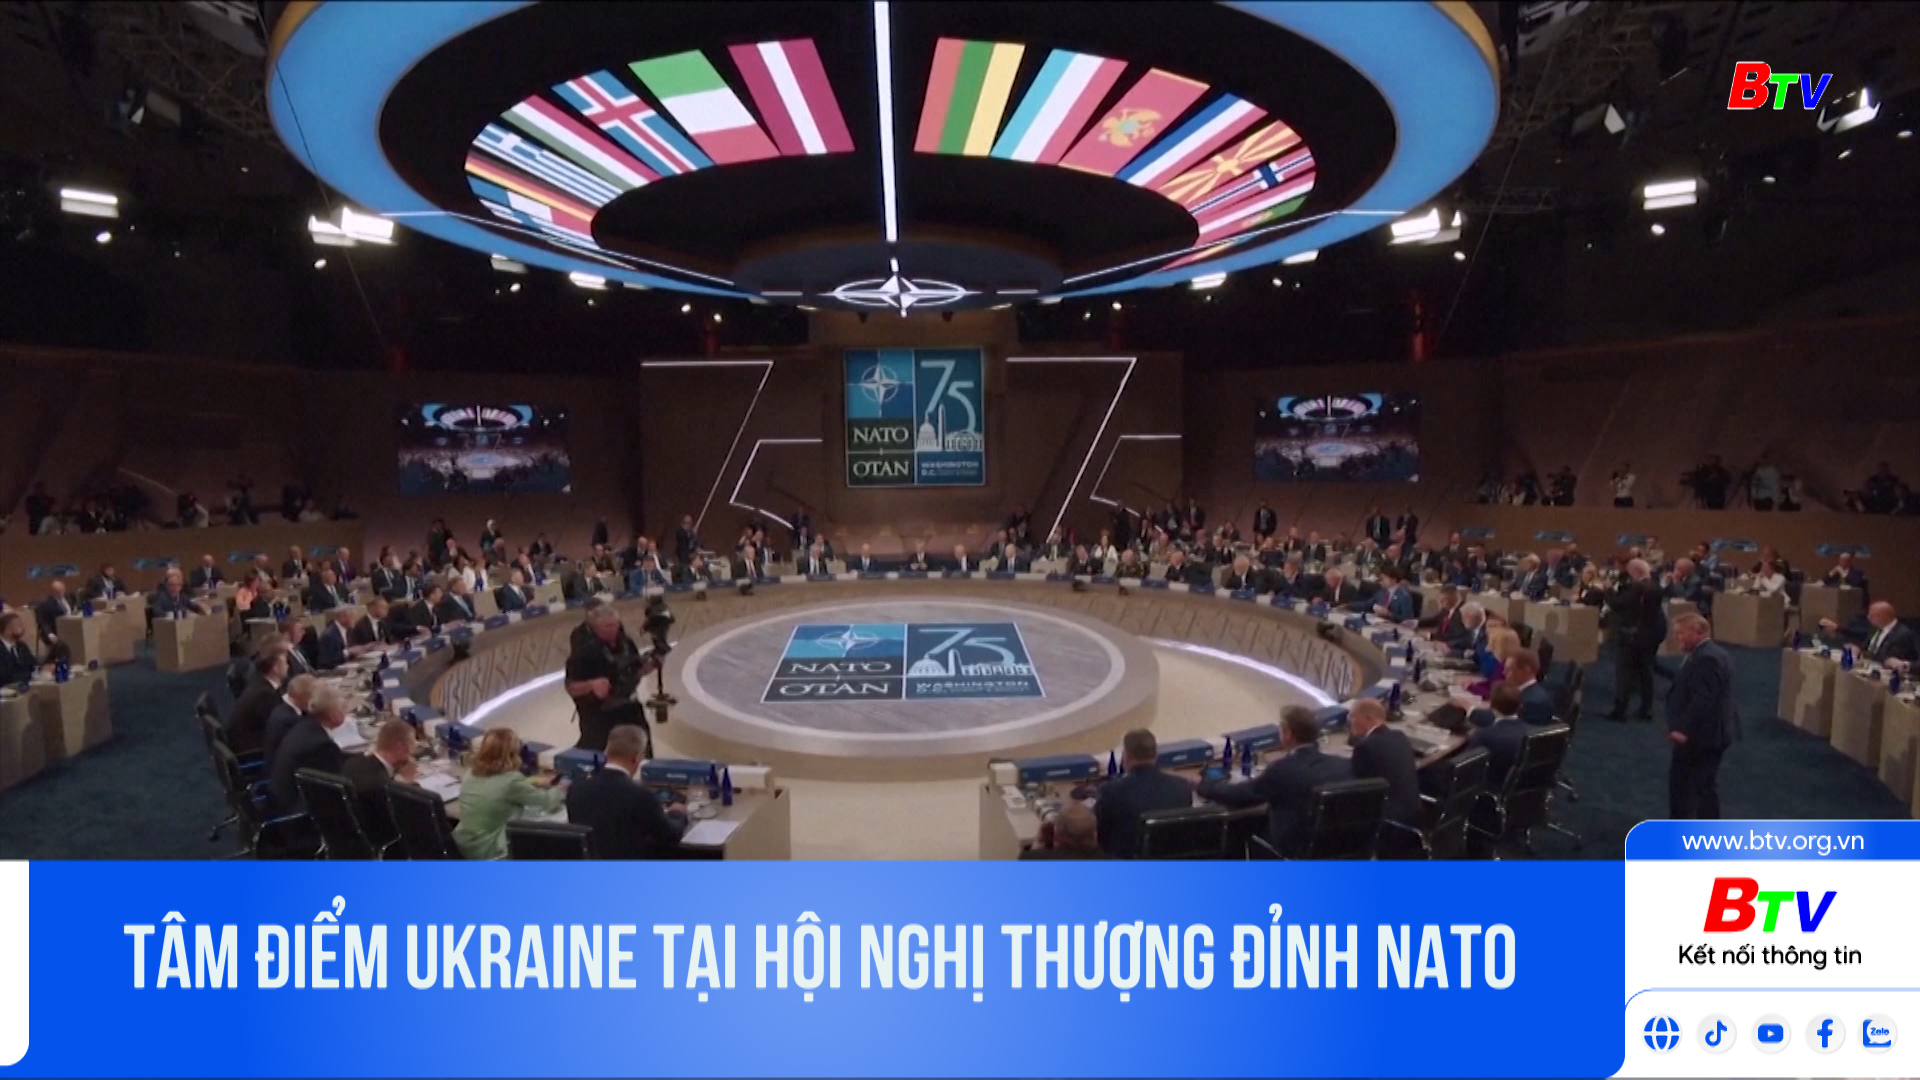 Tâm điểm Ukraine tại Hội nghị thượng đỉnh Nato